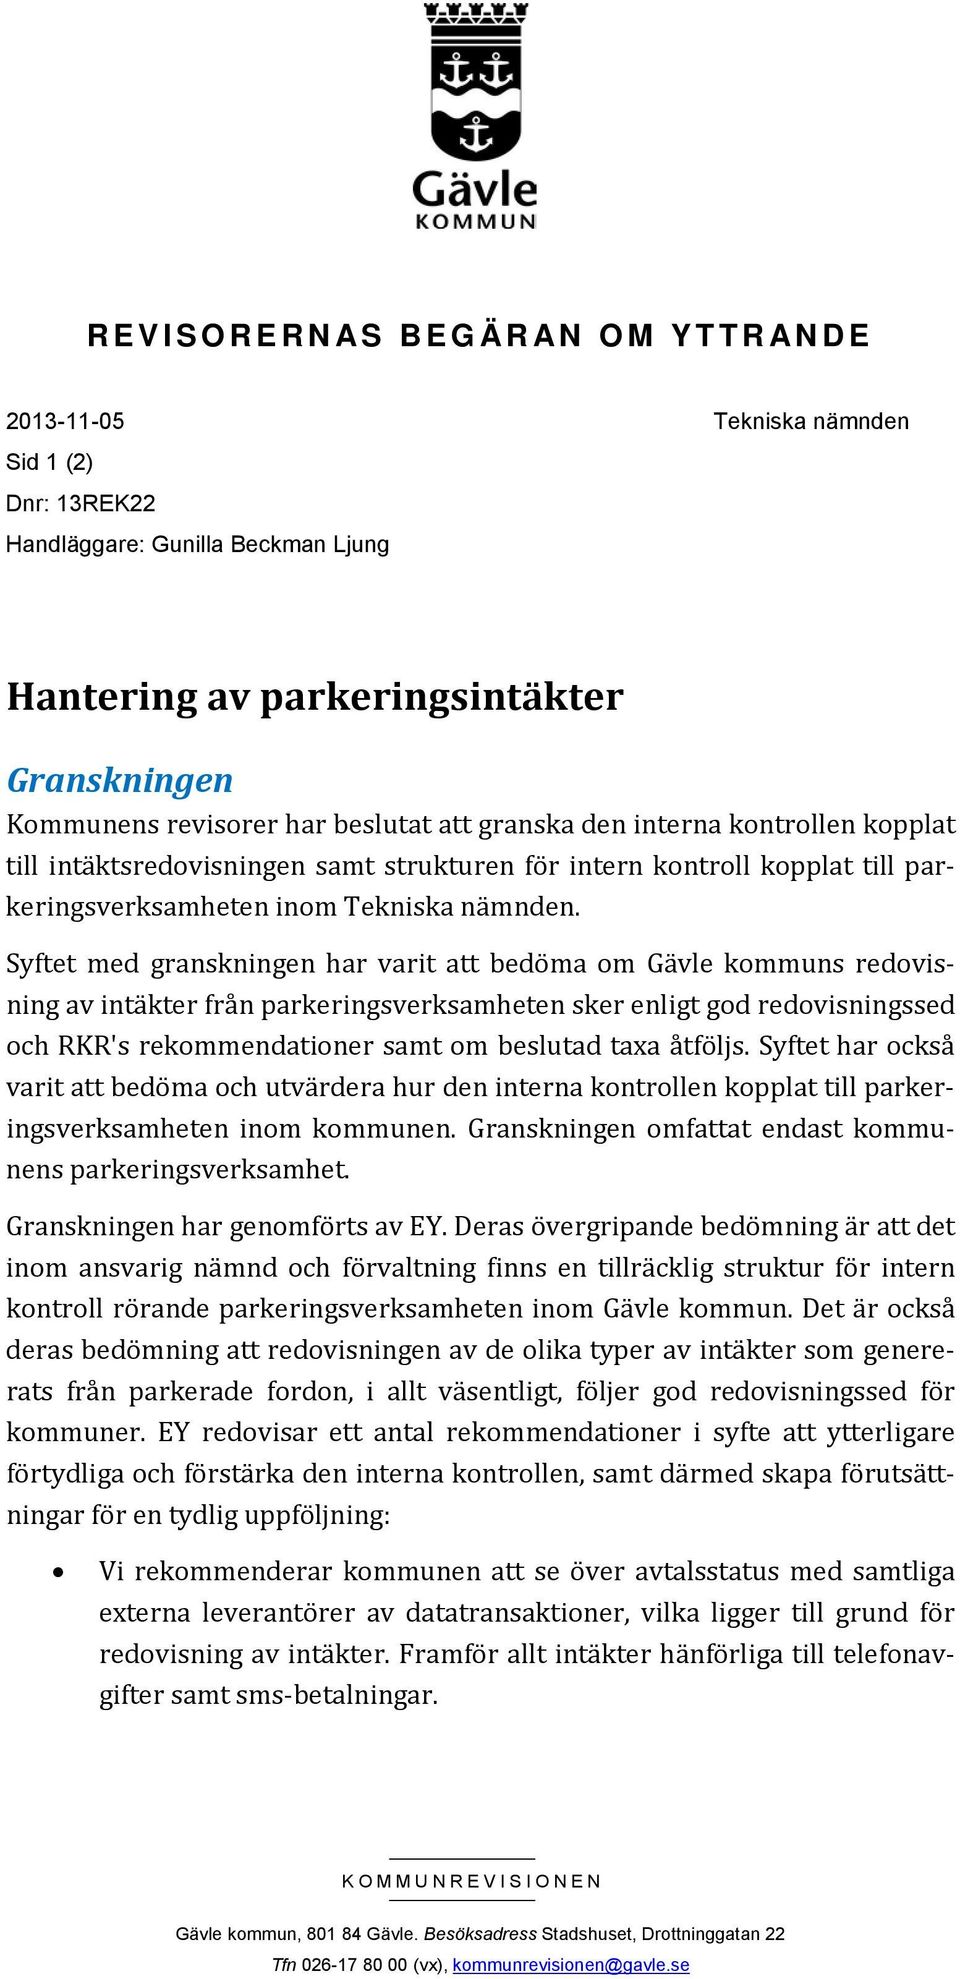 Syftet med granskningen har varit att bedöma om Gävle kommuns redovisning av intäkter från parkeringsverksamheten sker enligt god redovisningssed och RKR's rekommendationer samt om beslutad taxa